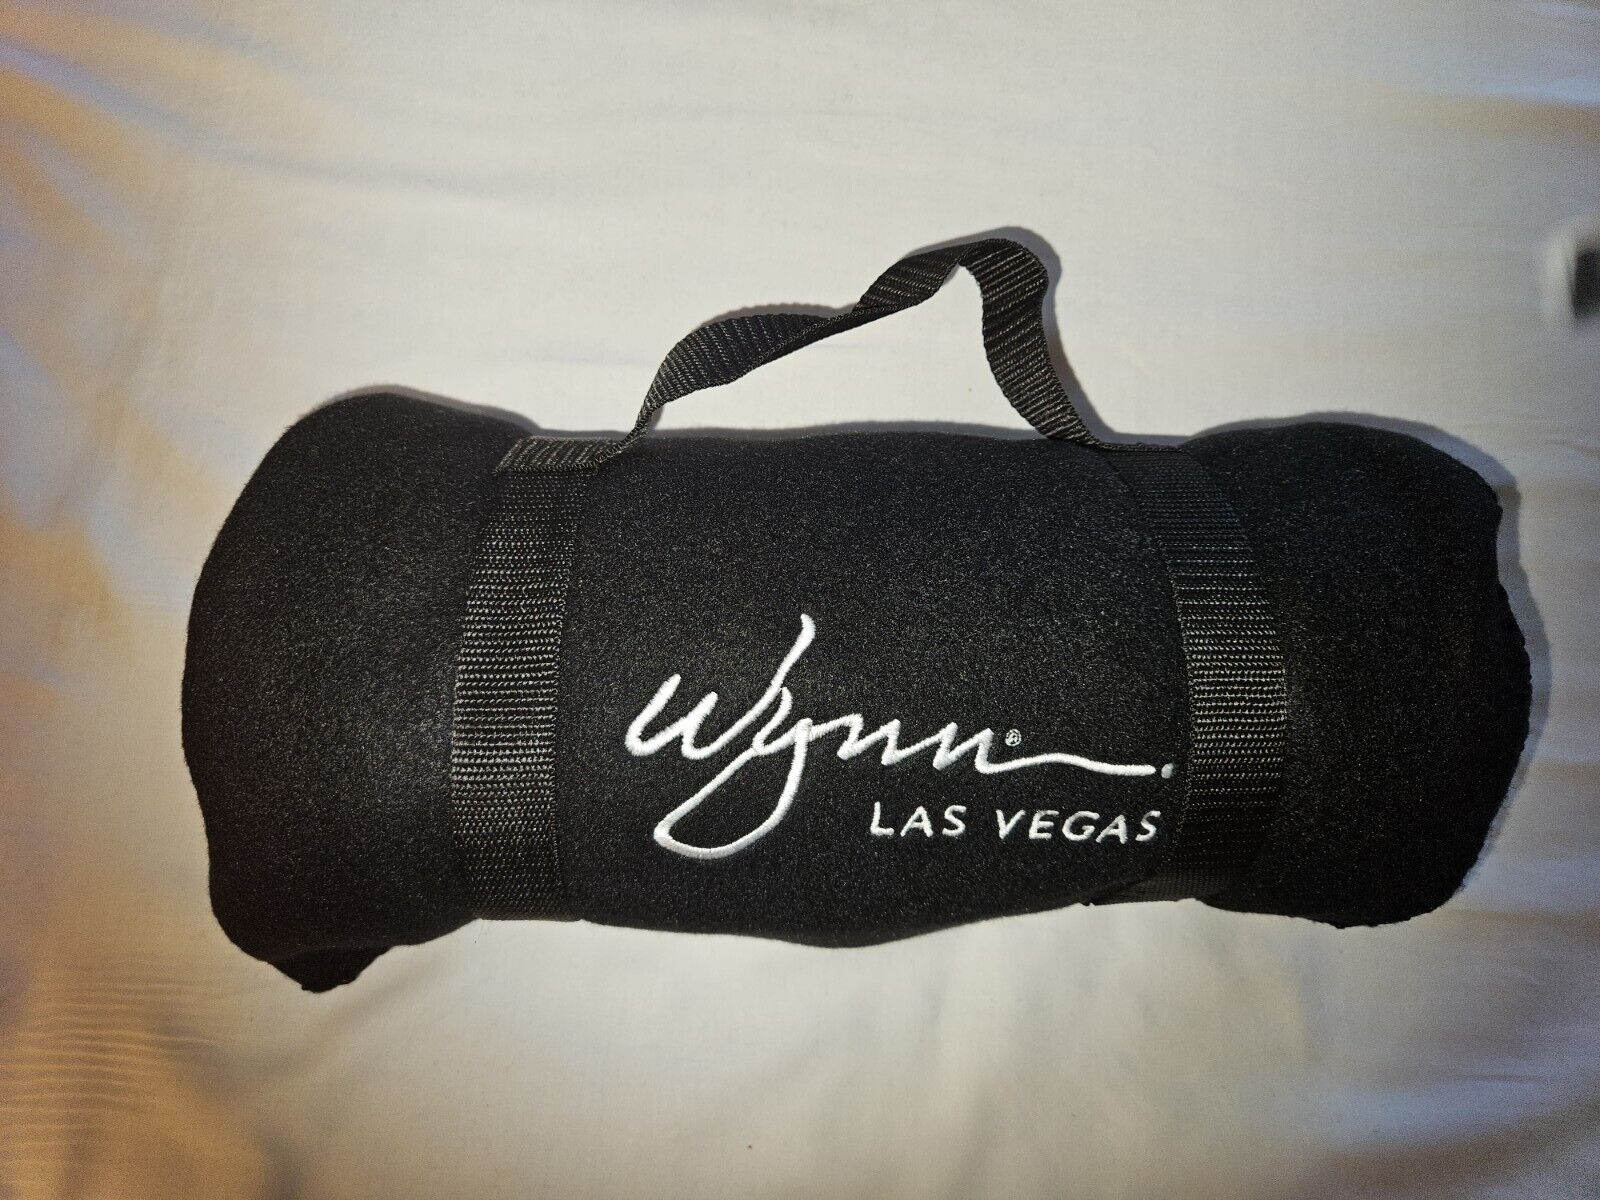 wynn hotel collectors black blanket